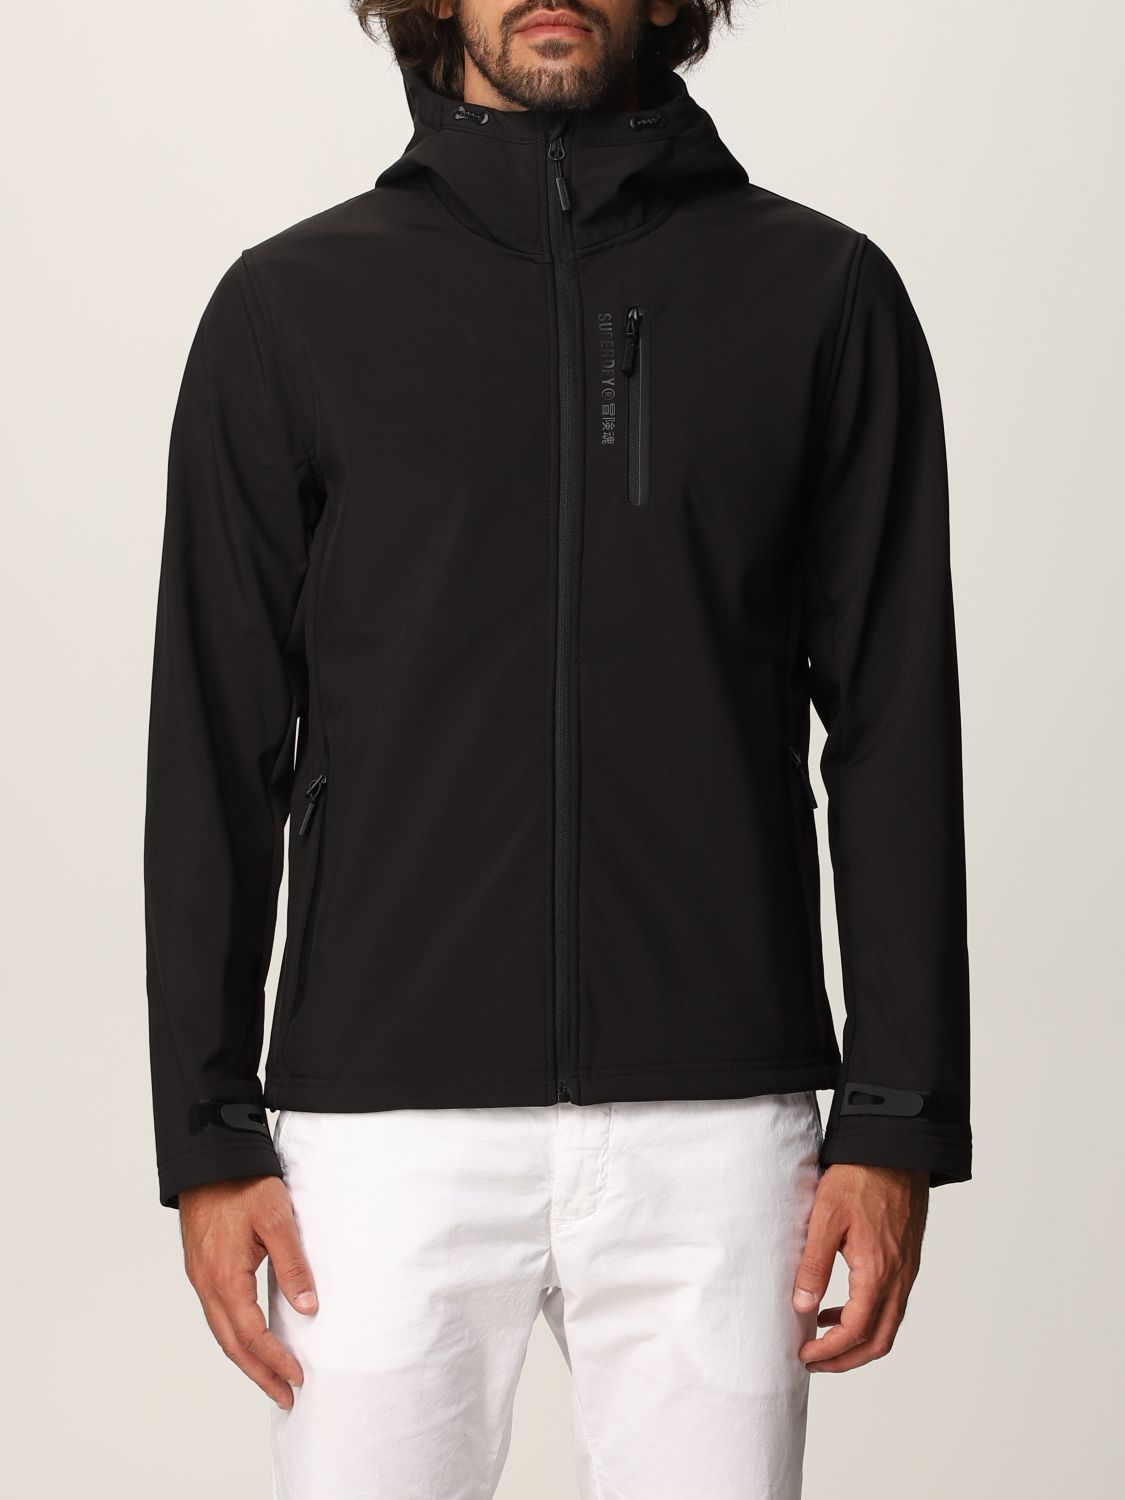 SUPERDRY: jacket for men - Black | Superdry jacket M5010172A online on ...